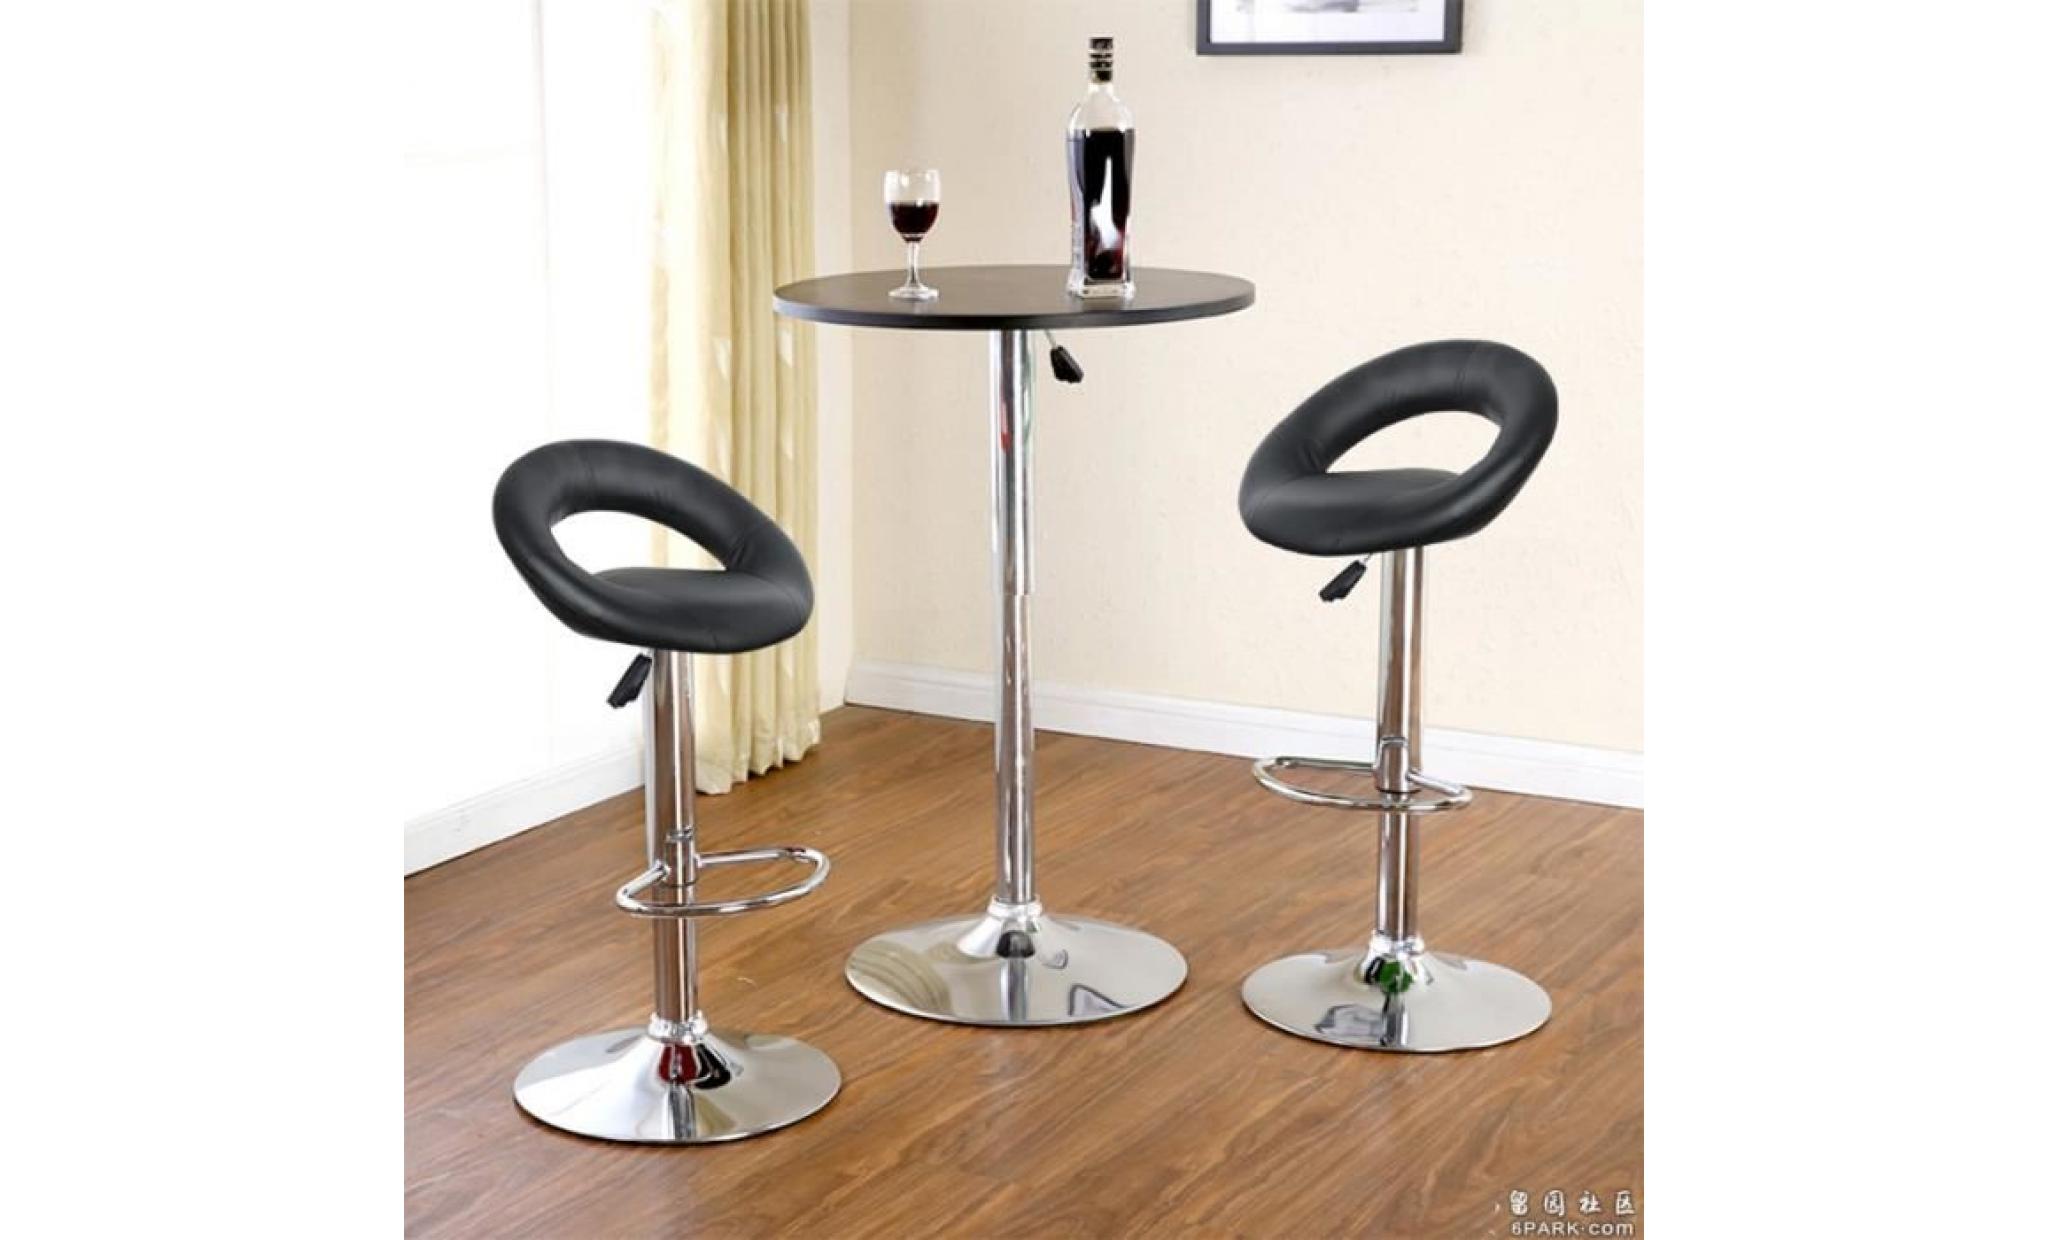 2 tabouret de bar reglable, chaise de salon confortable design moderne  noir    freestyle